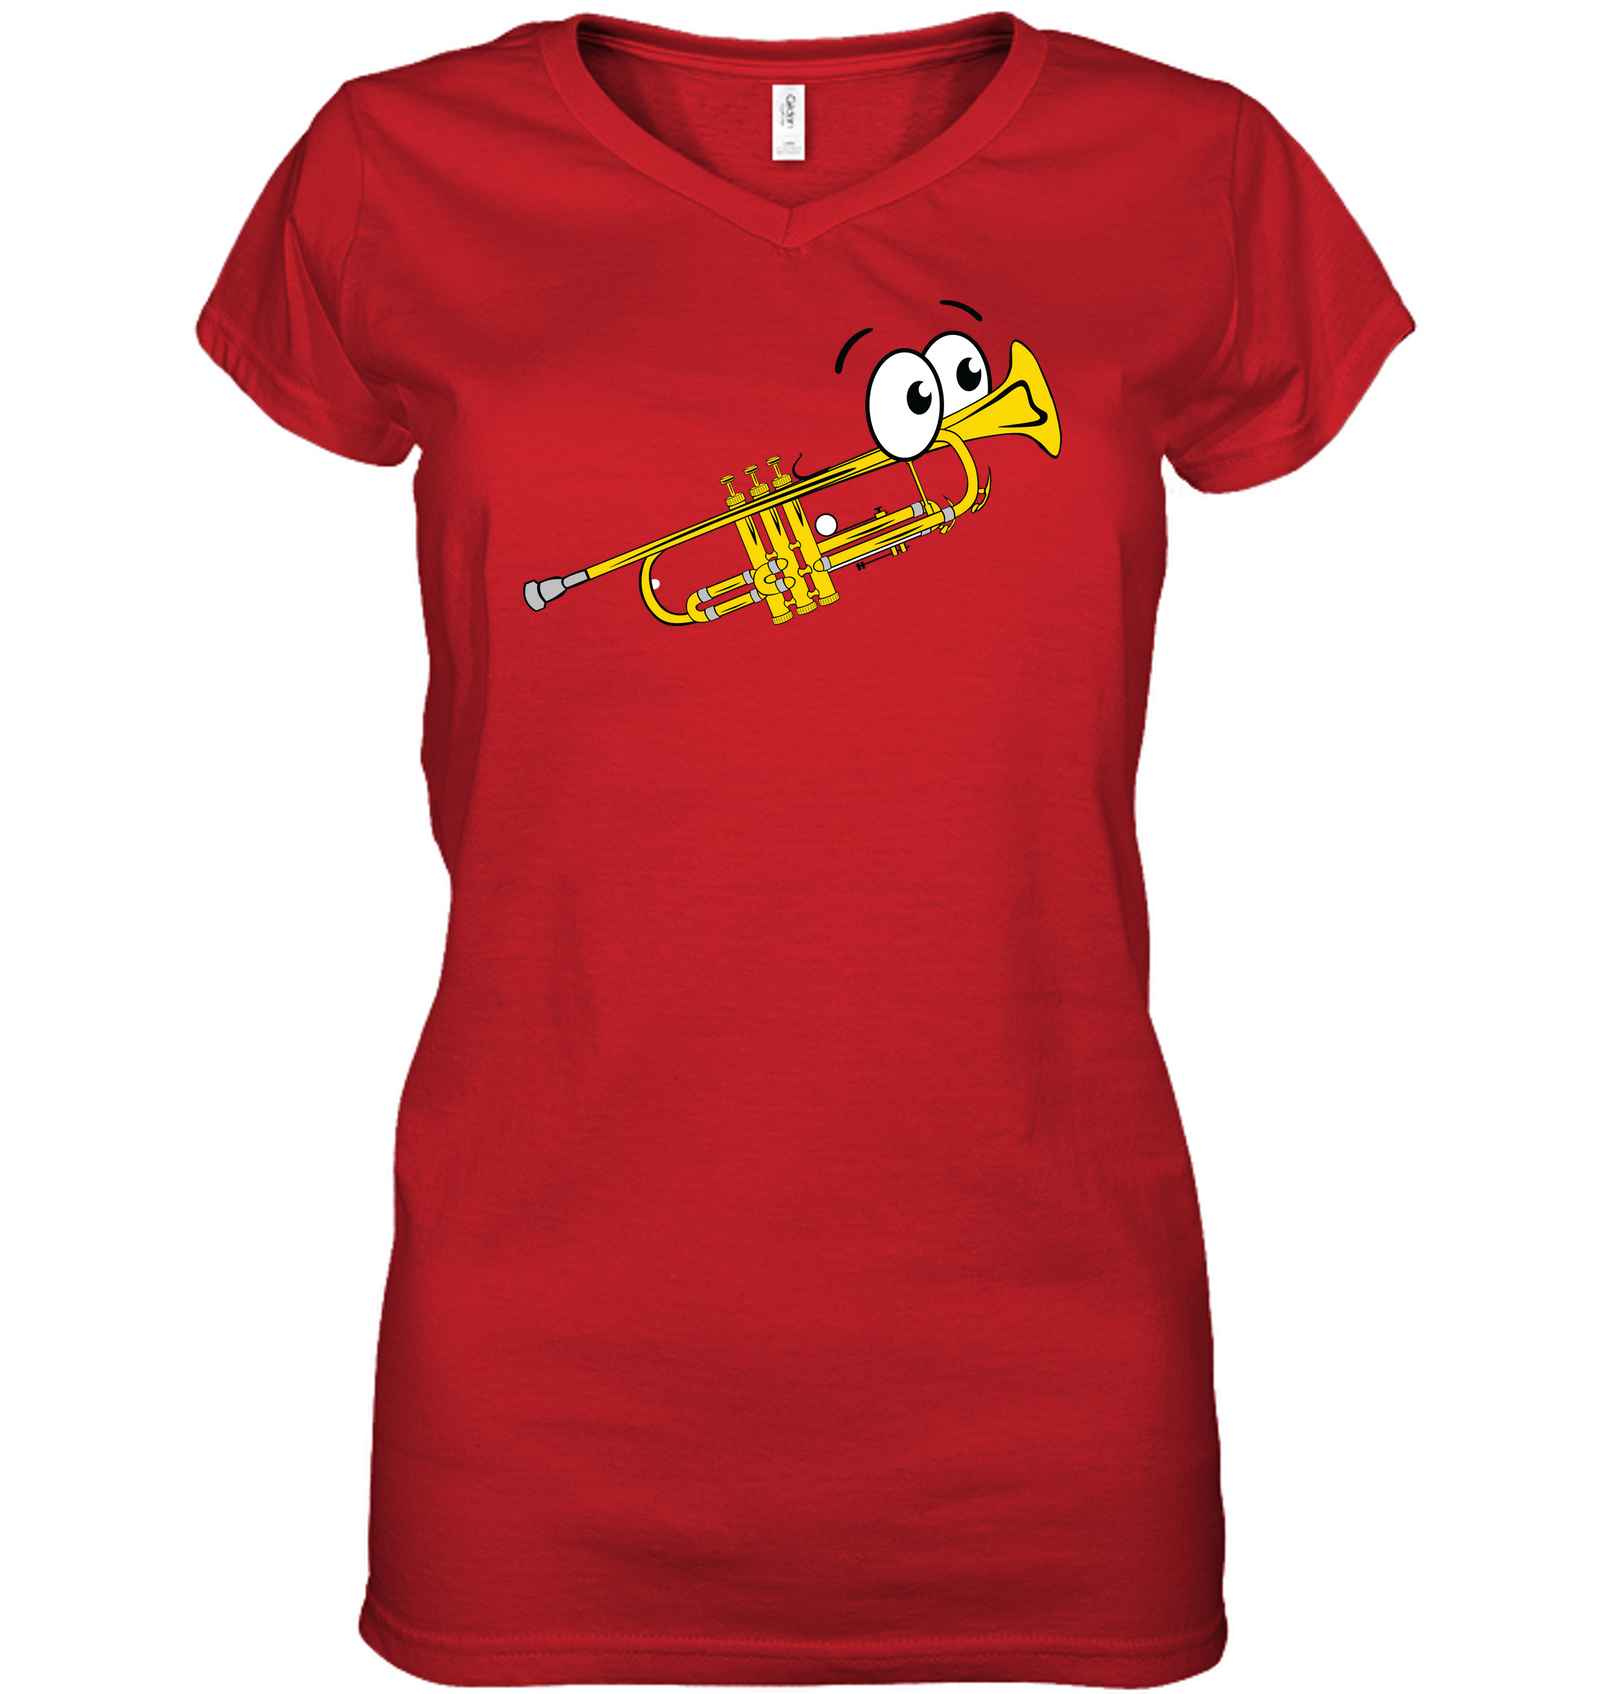 Trumpet Man - Hanes Women's Nano-T® V-Neck T-Shirt